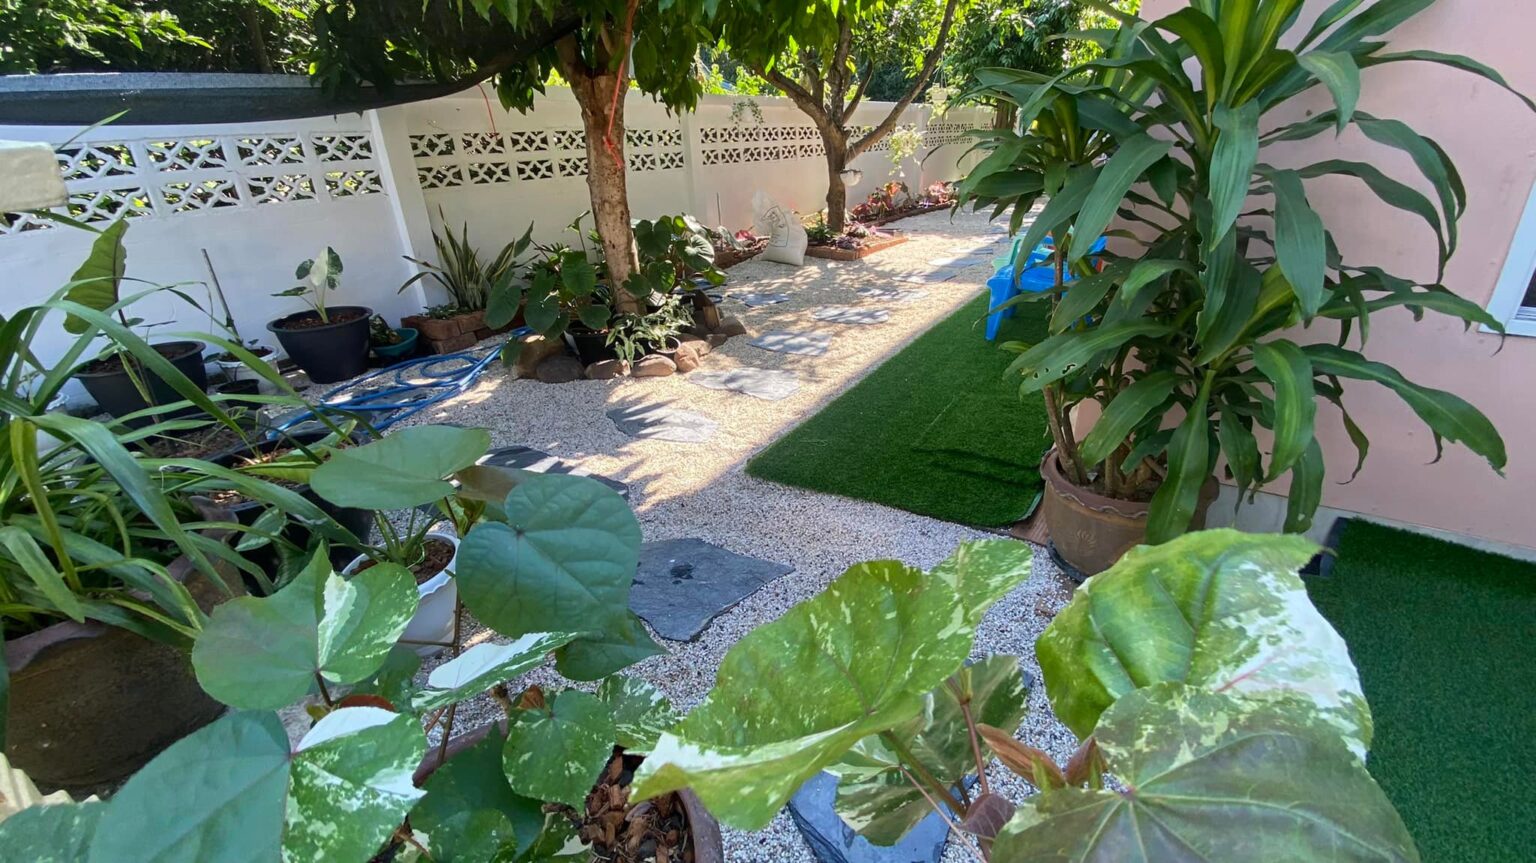 ชมไอเดีย “จัดสวนข้างบ้าน” เปลี่ยนมุมสุดรก เป็นมุมพักผ่อนสุดชิล